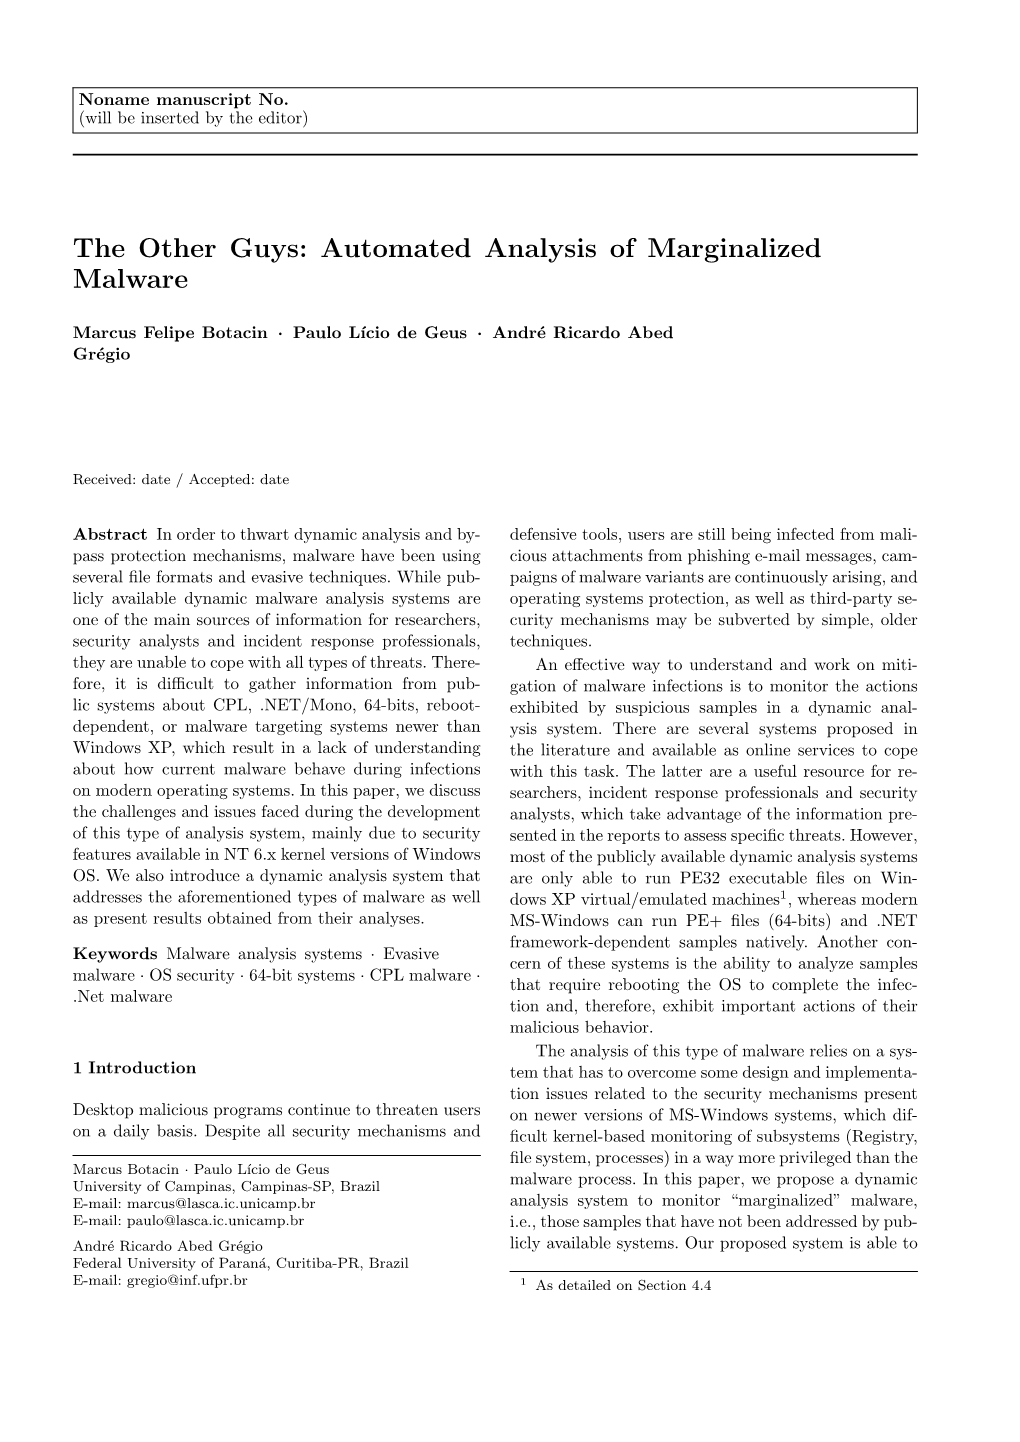 Automated Analysis of Marginalized Malware